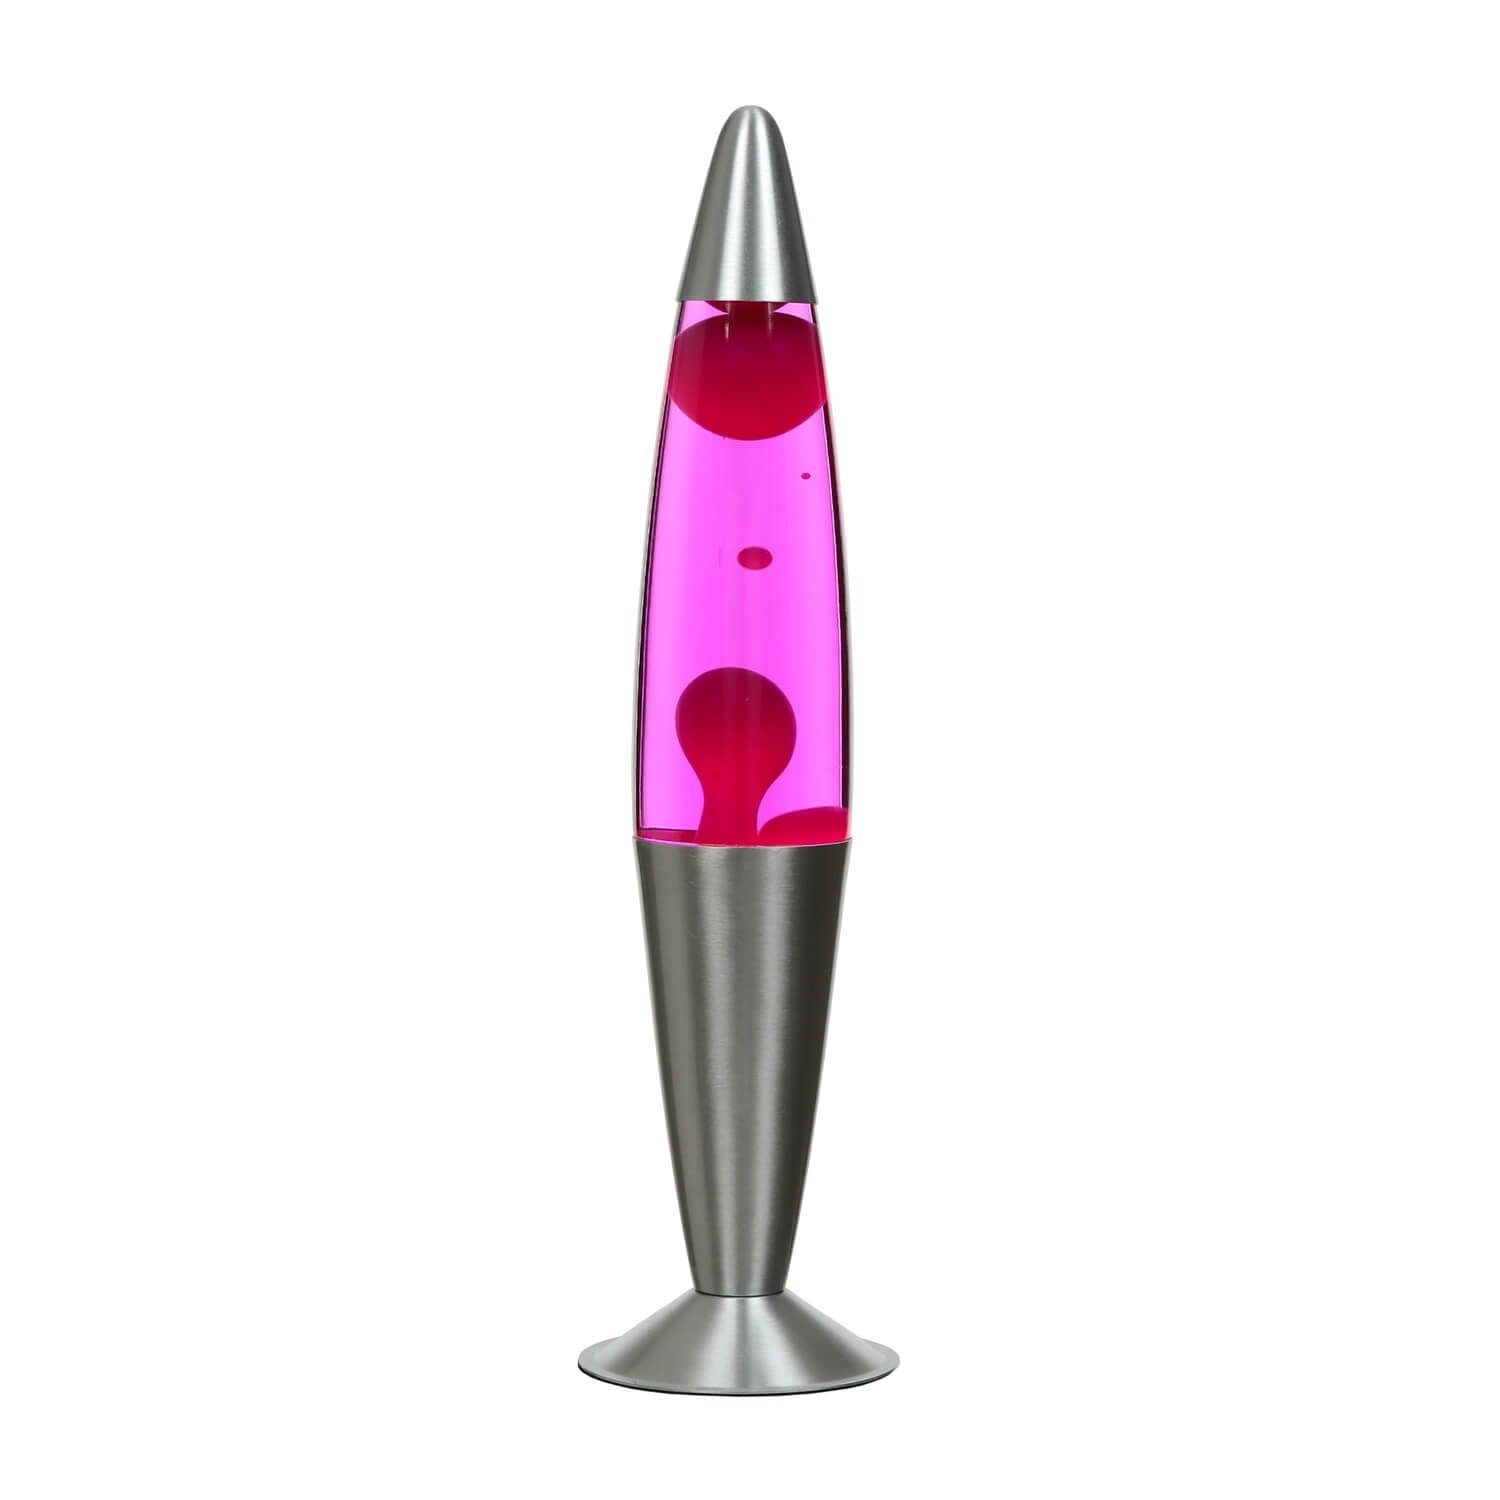 Design Pink JENNY, Lavalampe Retro Tischlampe Tischleuchte Licht-Erlebnisse